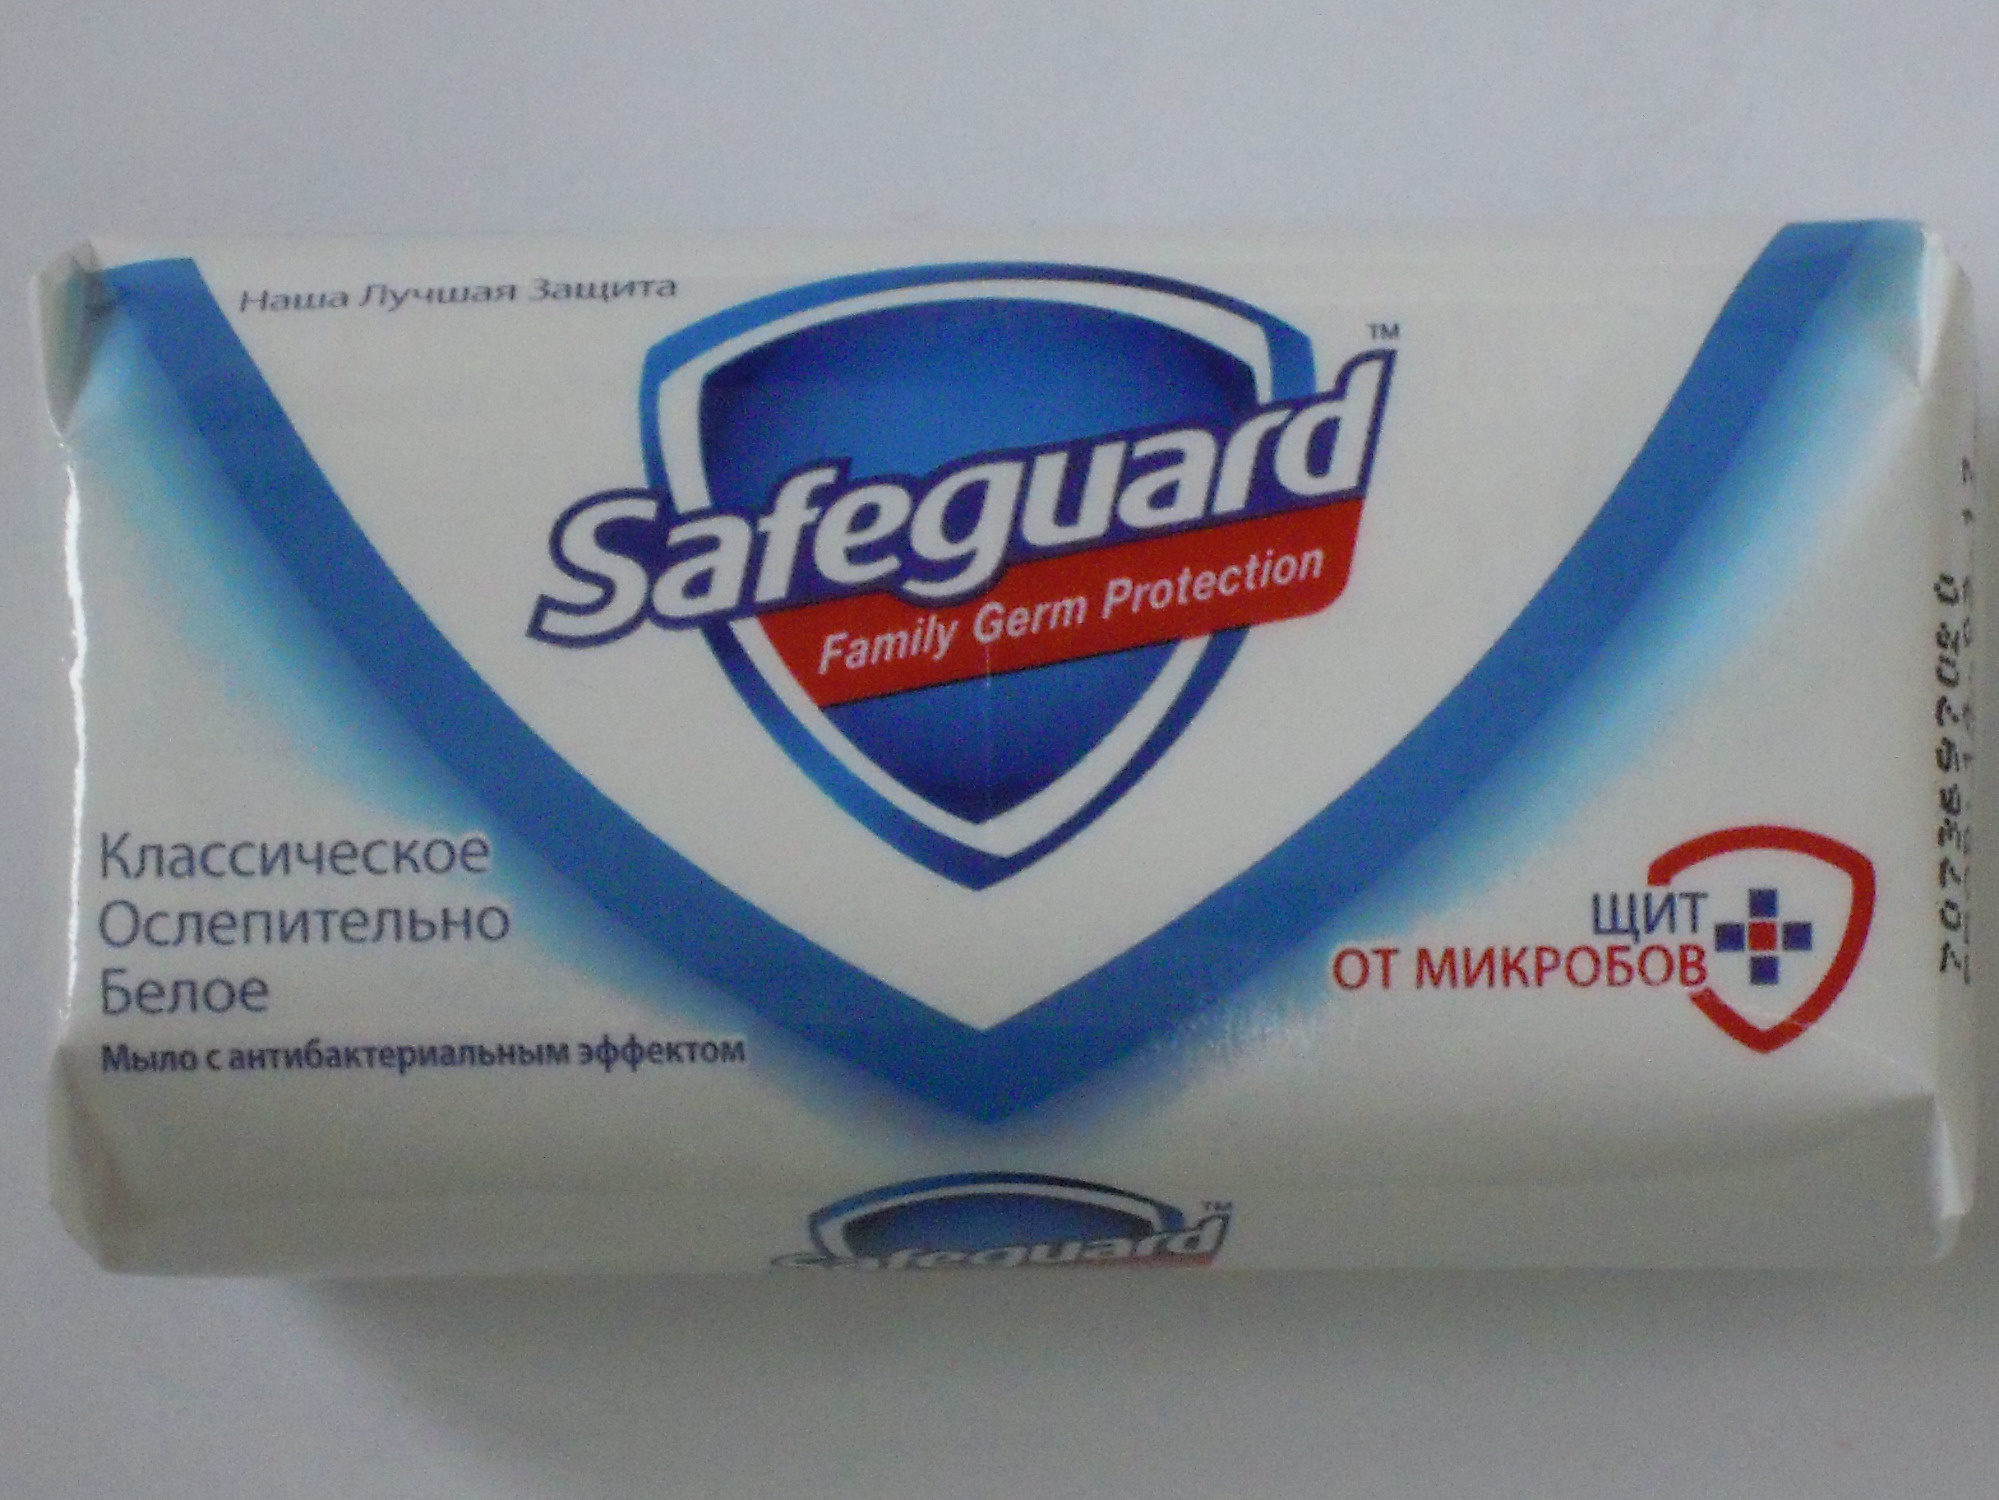 Safeguard Классическое Ослепительно Белое - Product - ru